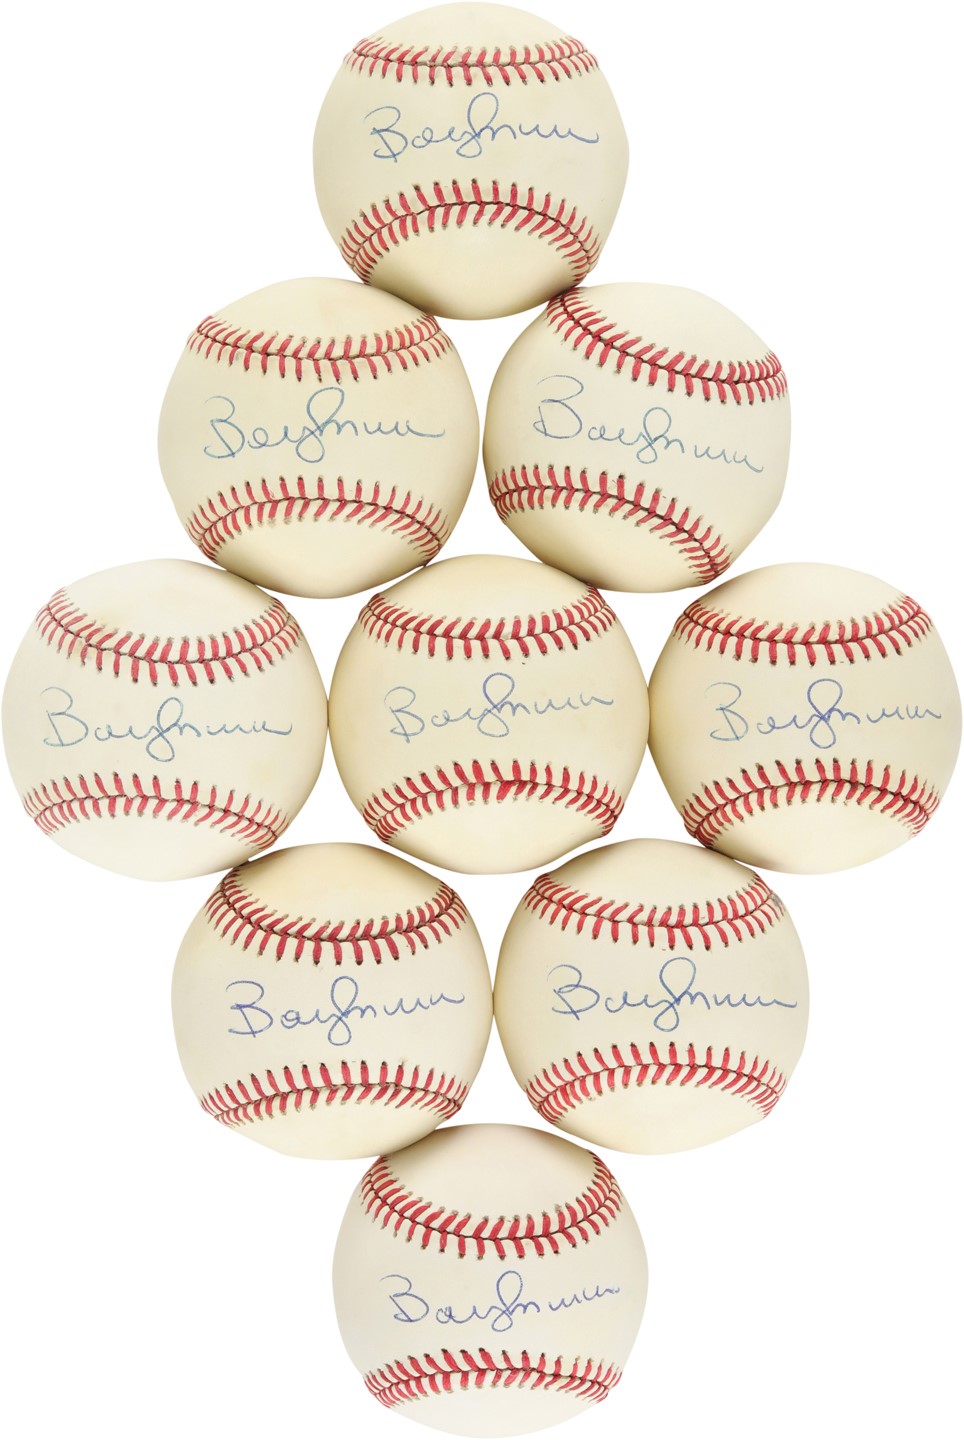 - Bobby Murcer Single-Signed Baseballs (9)